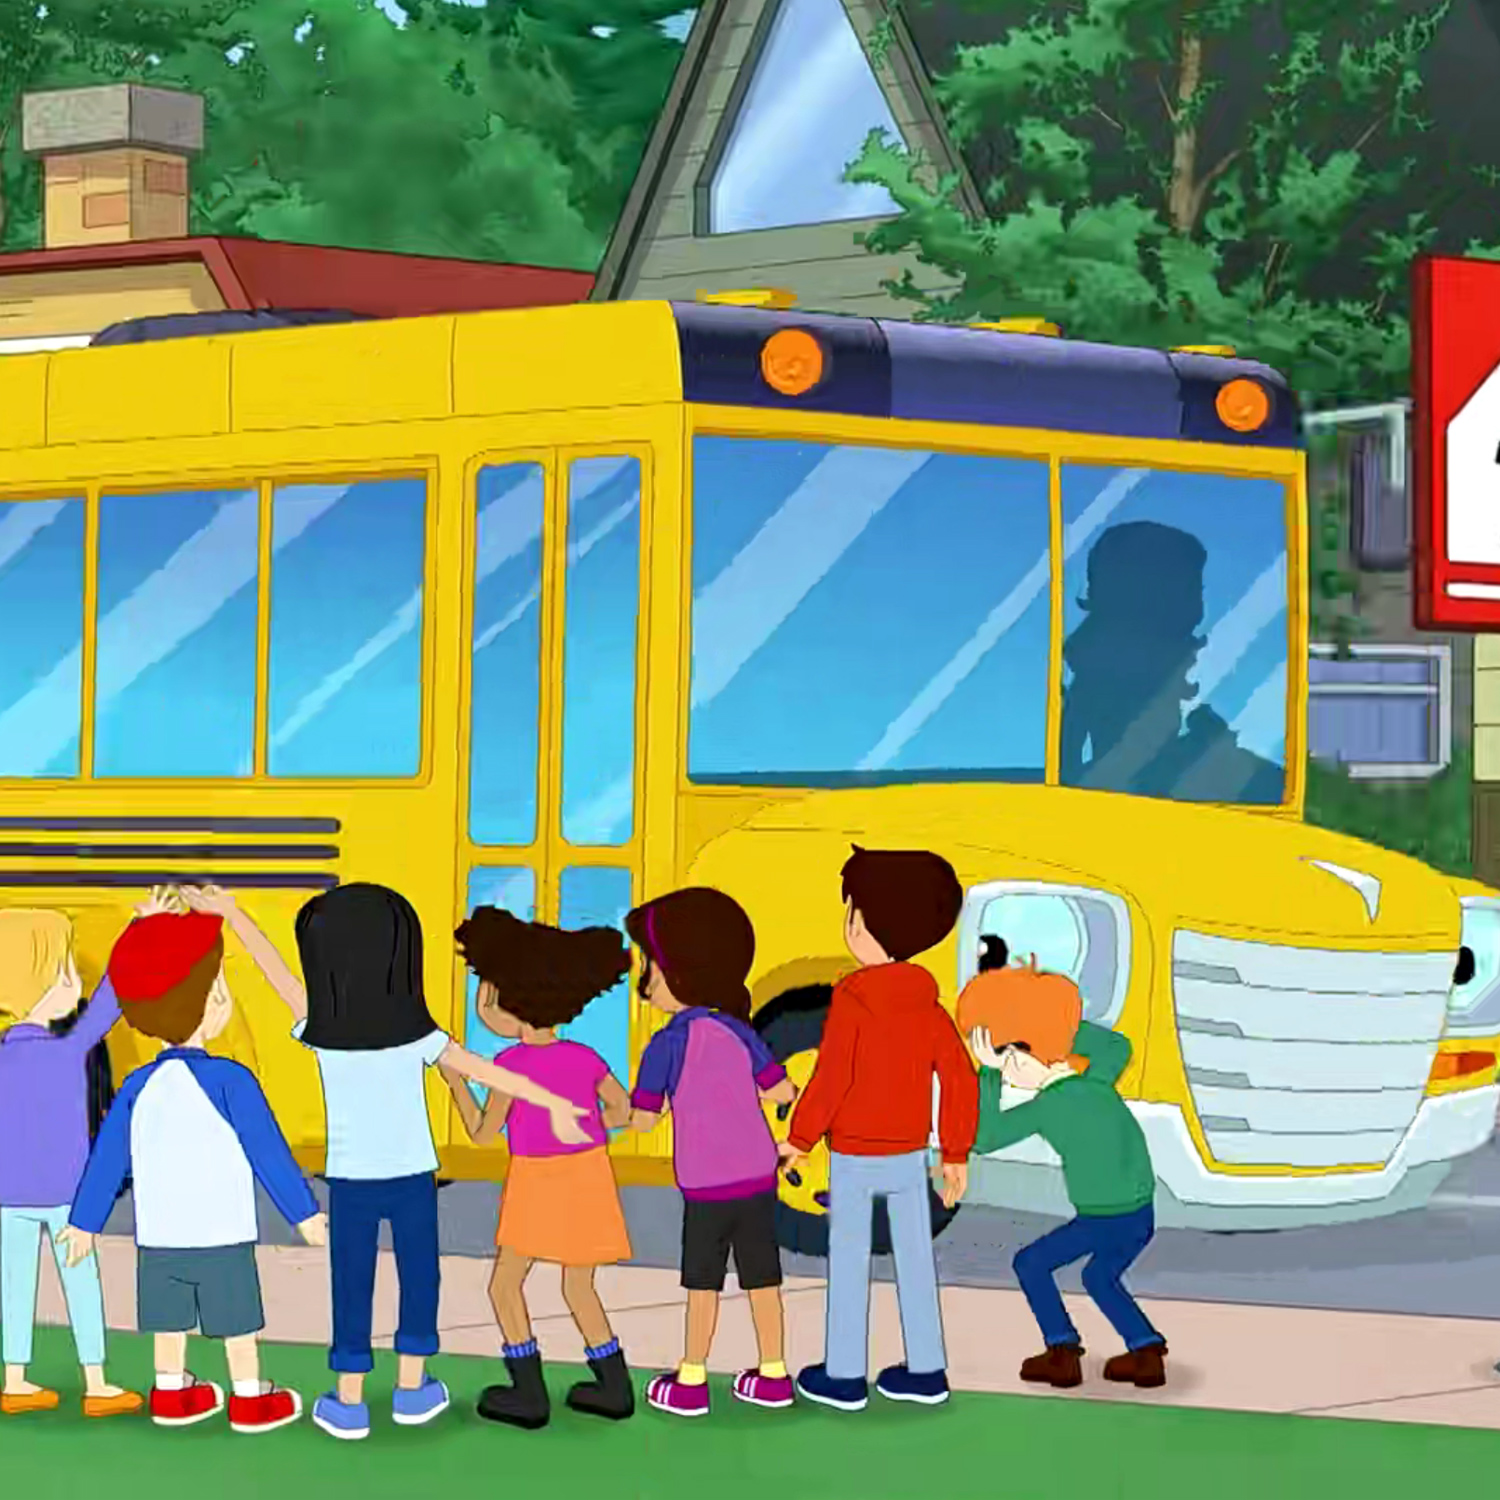 新版《神奇校车 Magic School Bus》英文字幕视频 第一季 新版《神奇校车 Magic School Bus》英文字幕视频 第一季